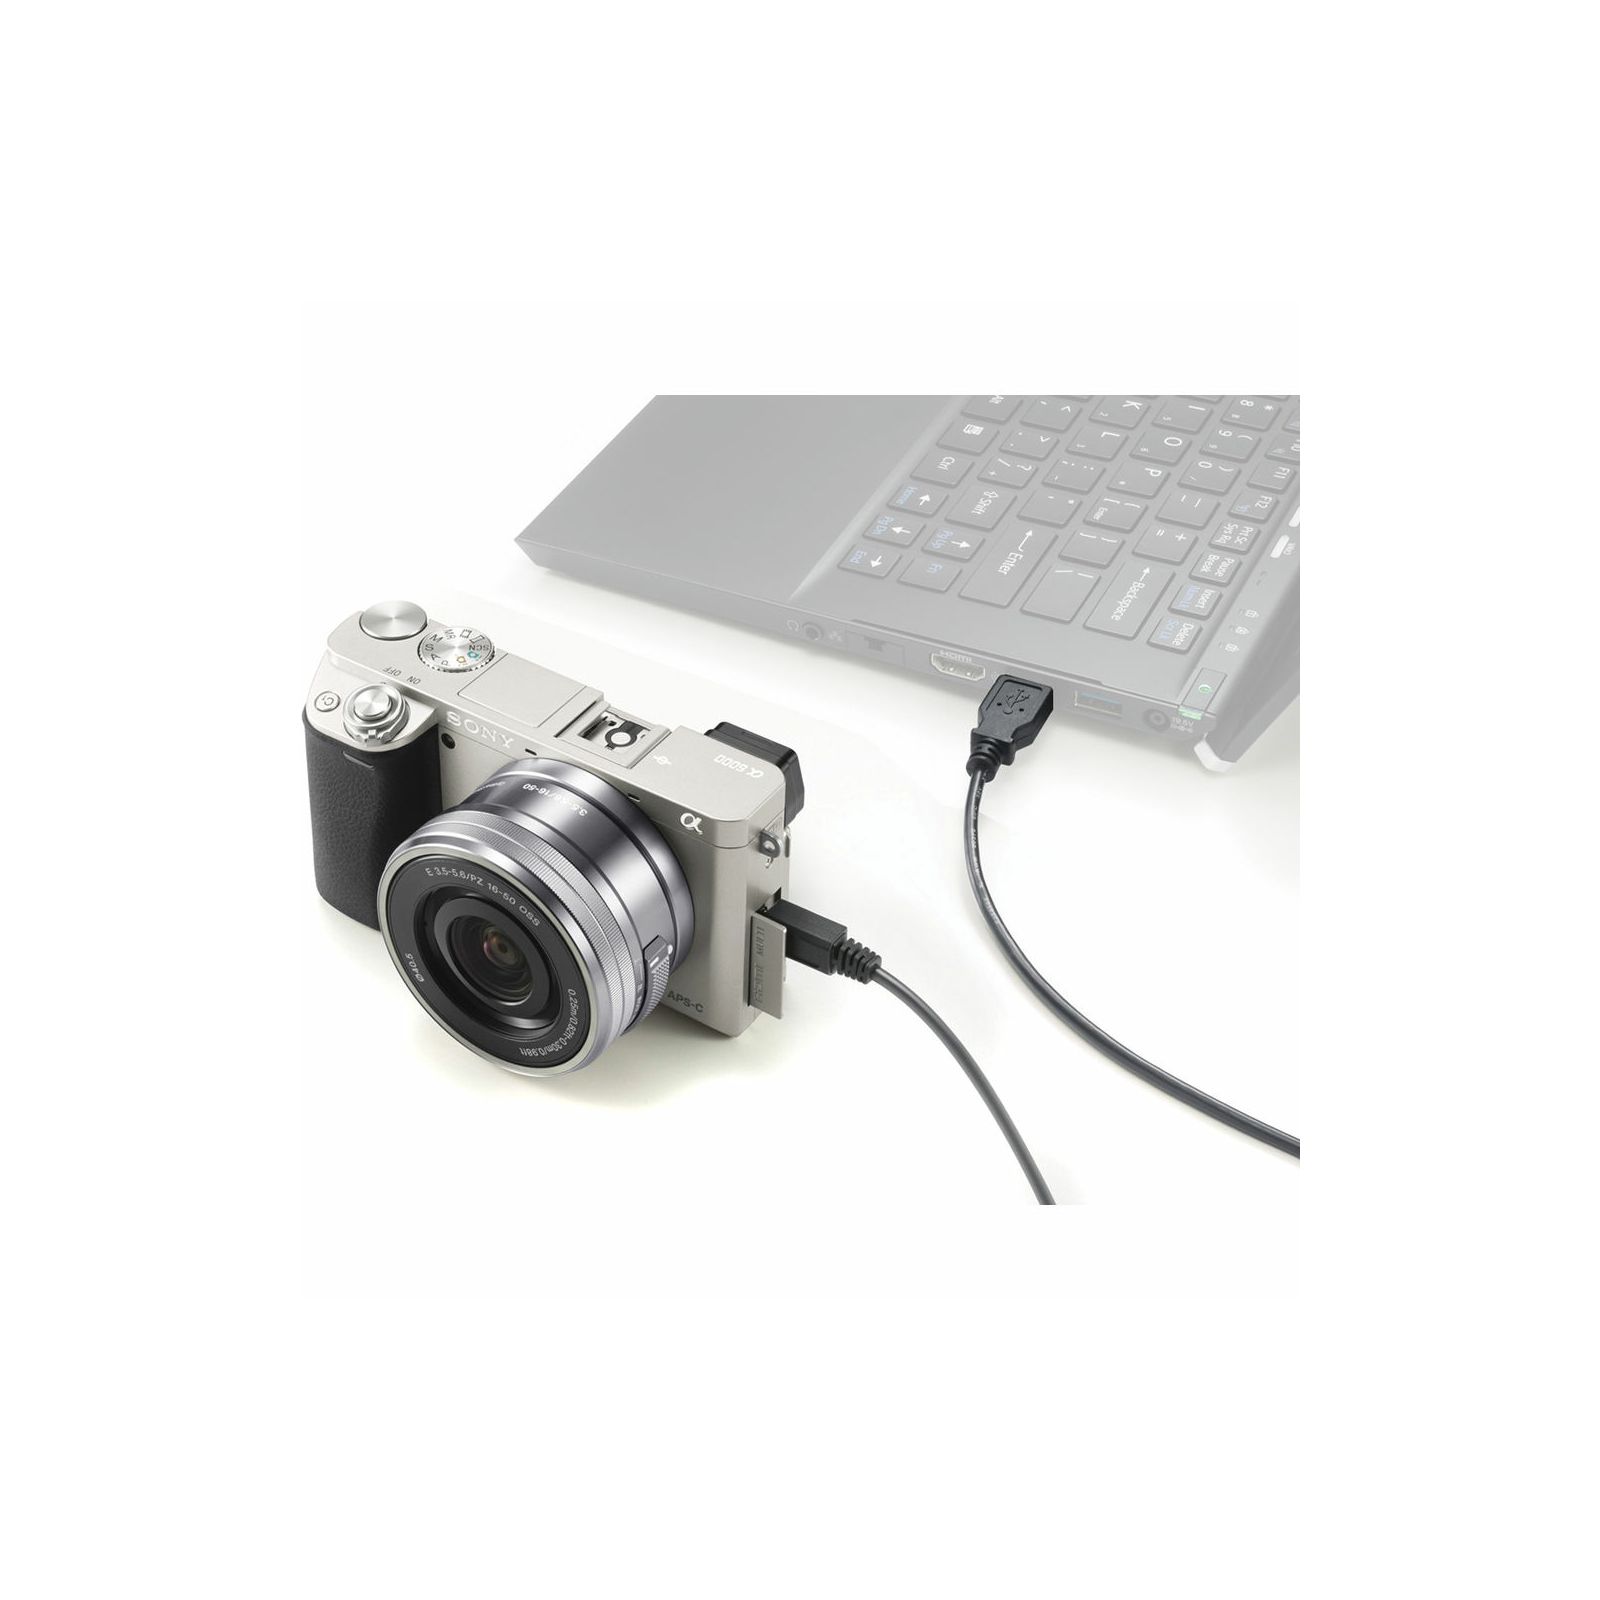 Sony Alpha a6000 + 16-50 f/3.5-5.6 KIT Silver Mirrorless Digital Camera srebreni bezrcalni digitalni fotoaparat i zoom objektiv SEL1650 16-50mm f3.5-5.6 ILCE-6000LS ILCE6000LS (ILCE6000LS.CEC)